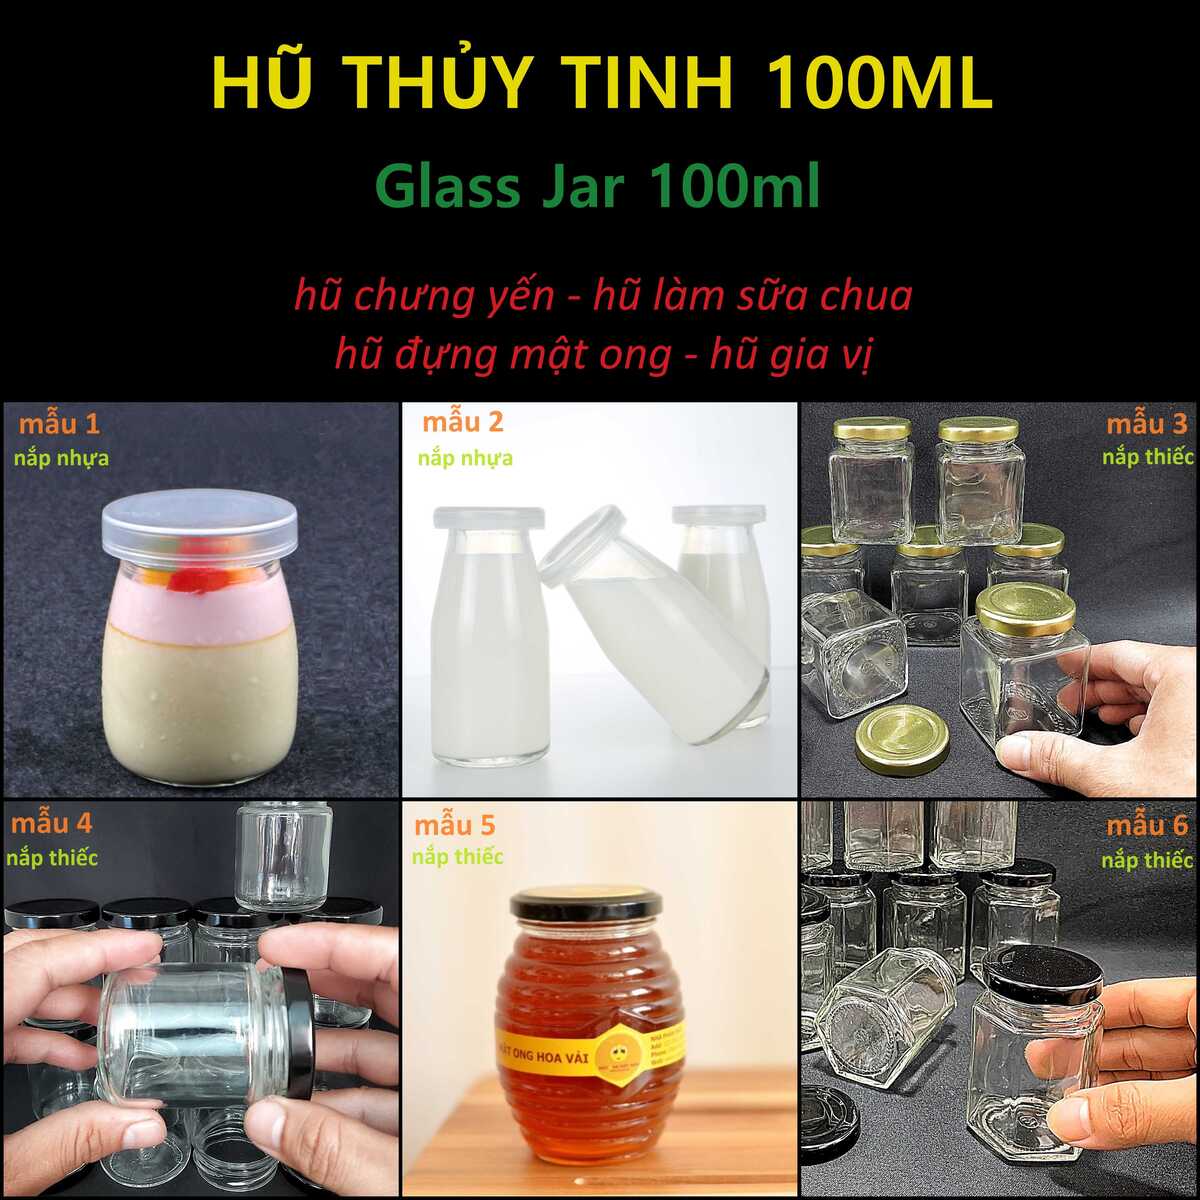 lo-thuy-tinh-100ml-glass-jar-100ml-hu-thuy-tinh-nho-lo-thuy-tinh-nho-hu-chung-yen-sao-hu-lam-sua-chua (1)